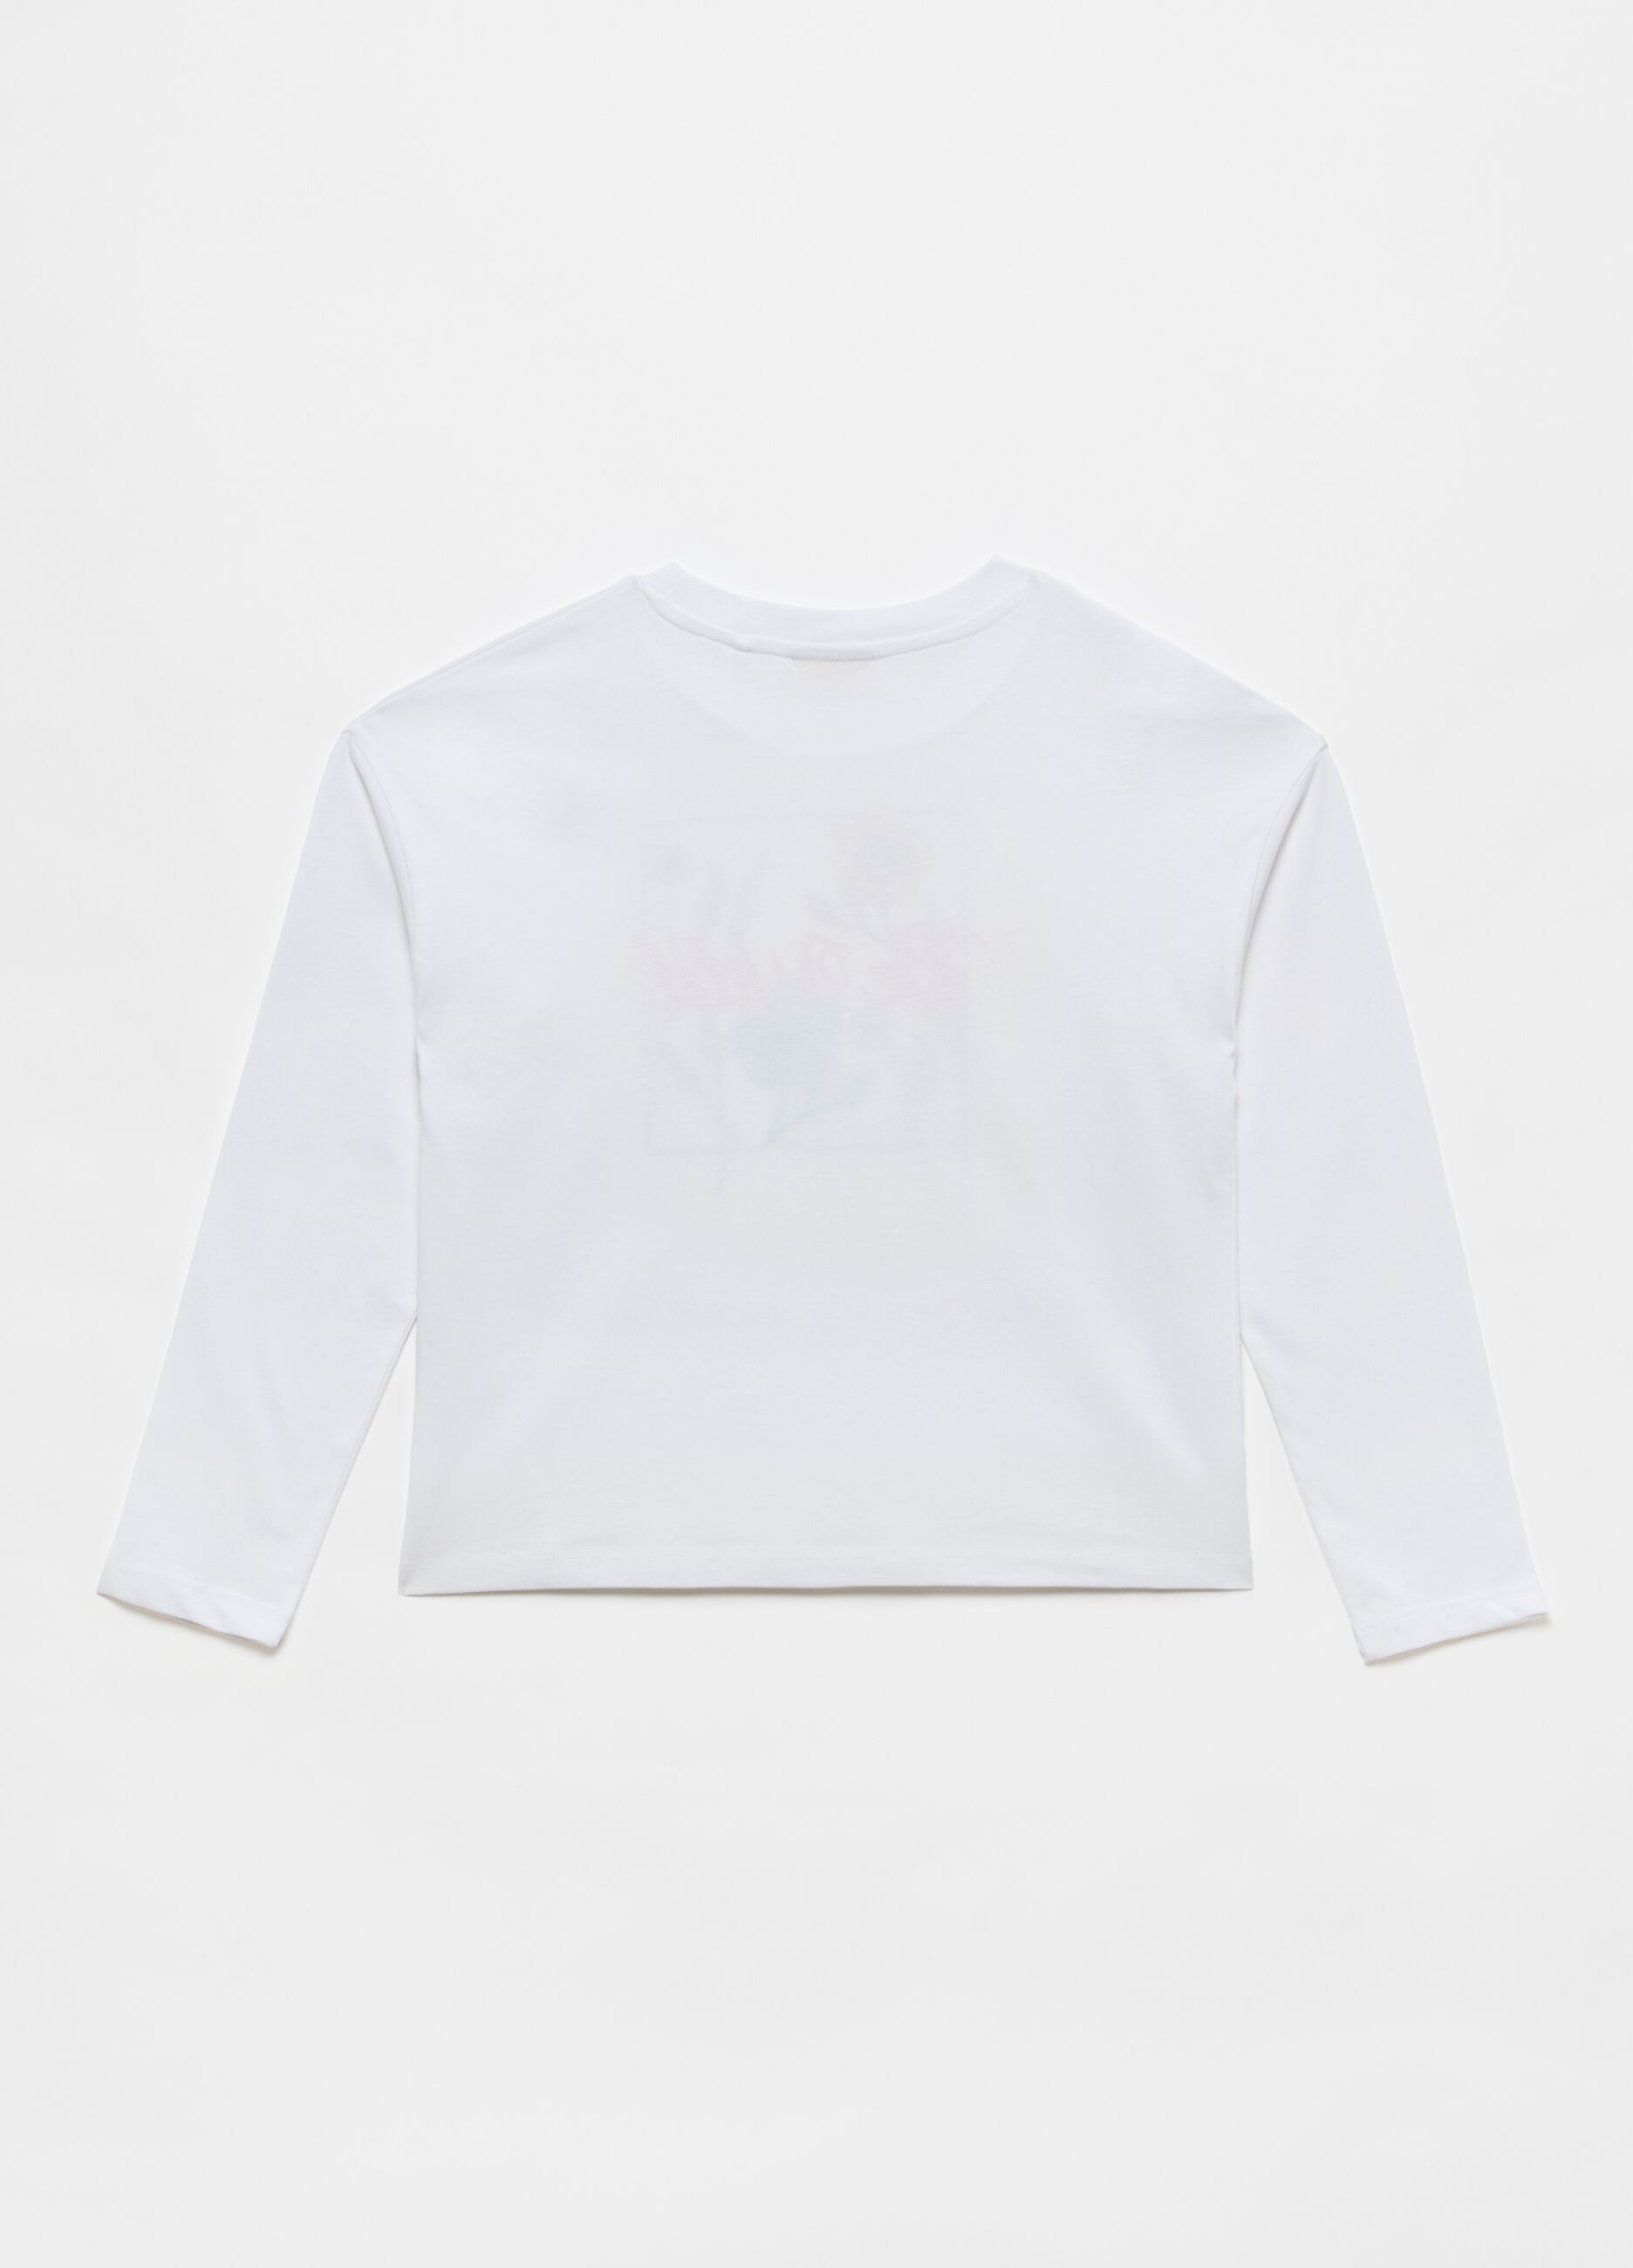 Camiseta corta de algodón estampado flores